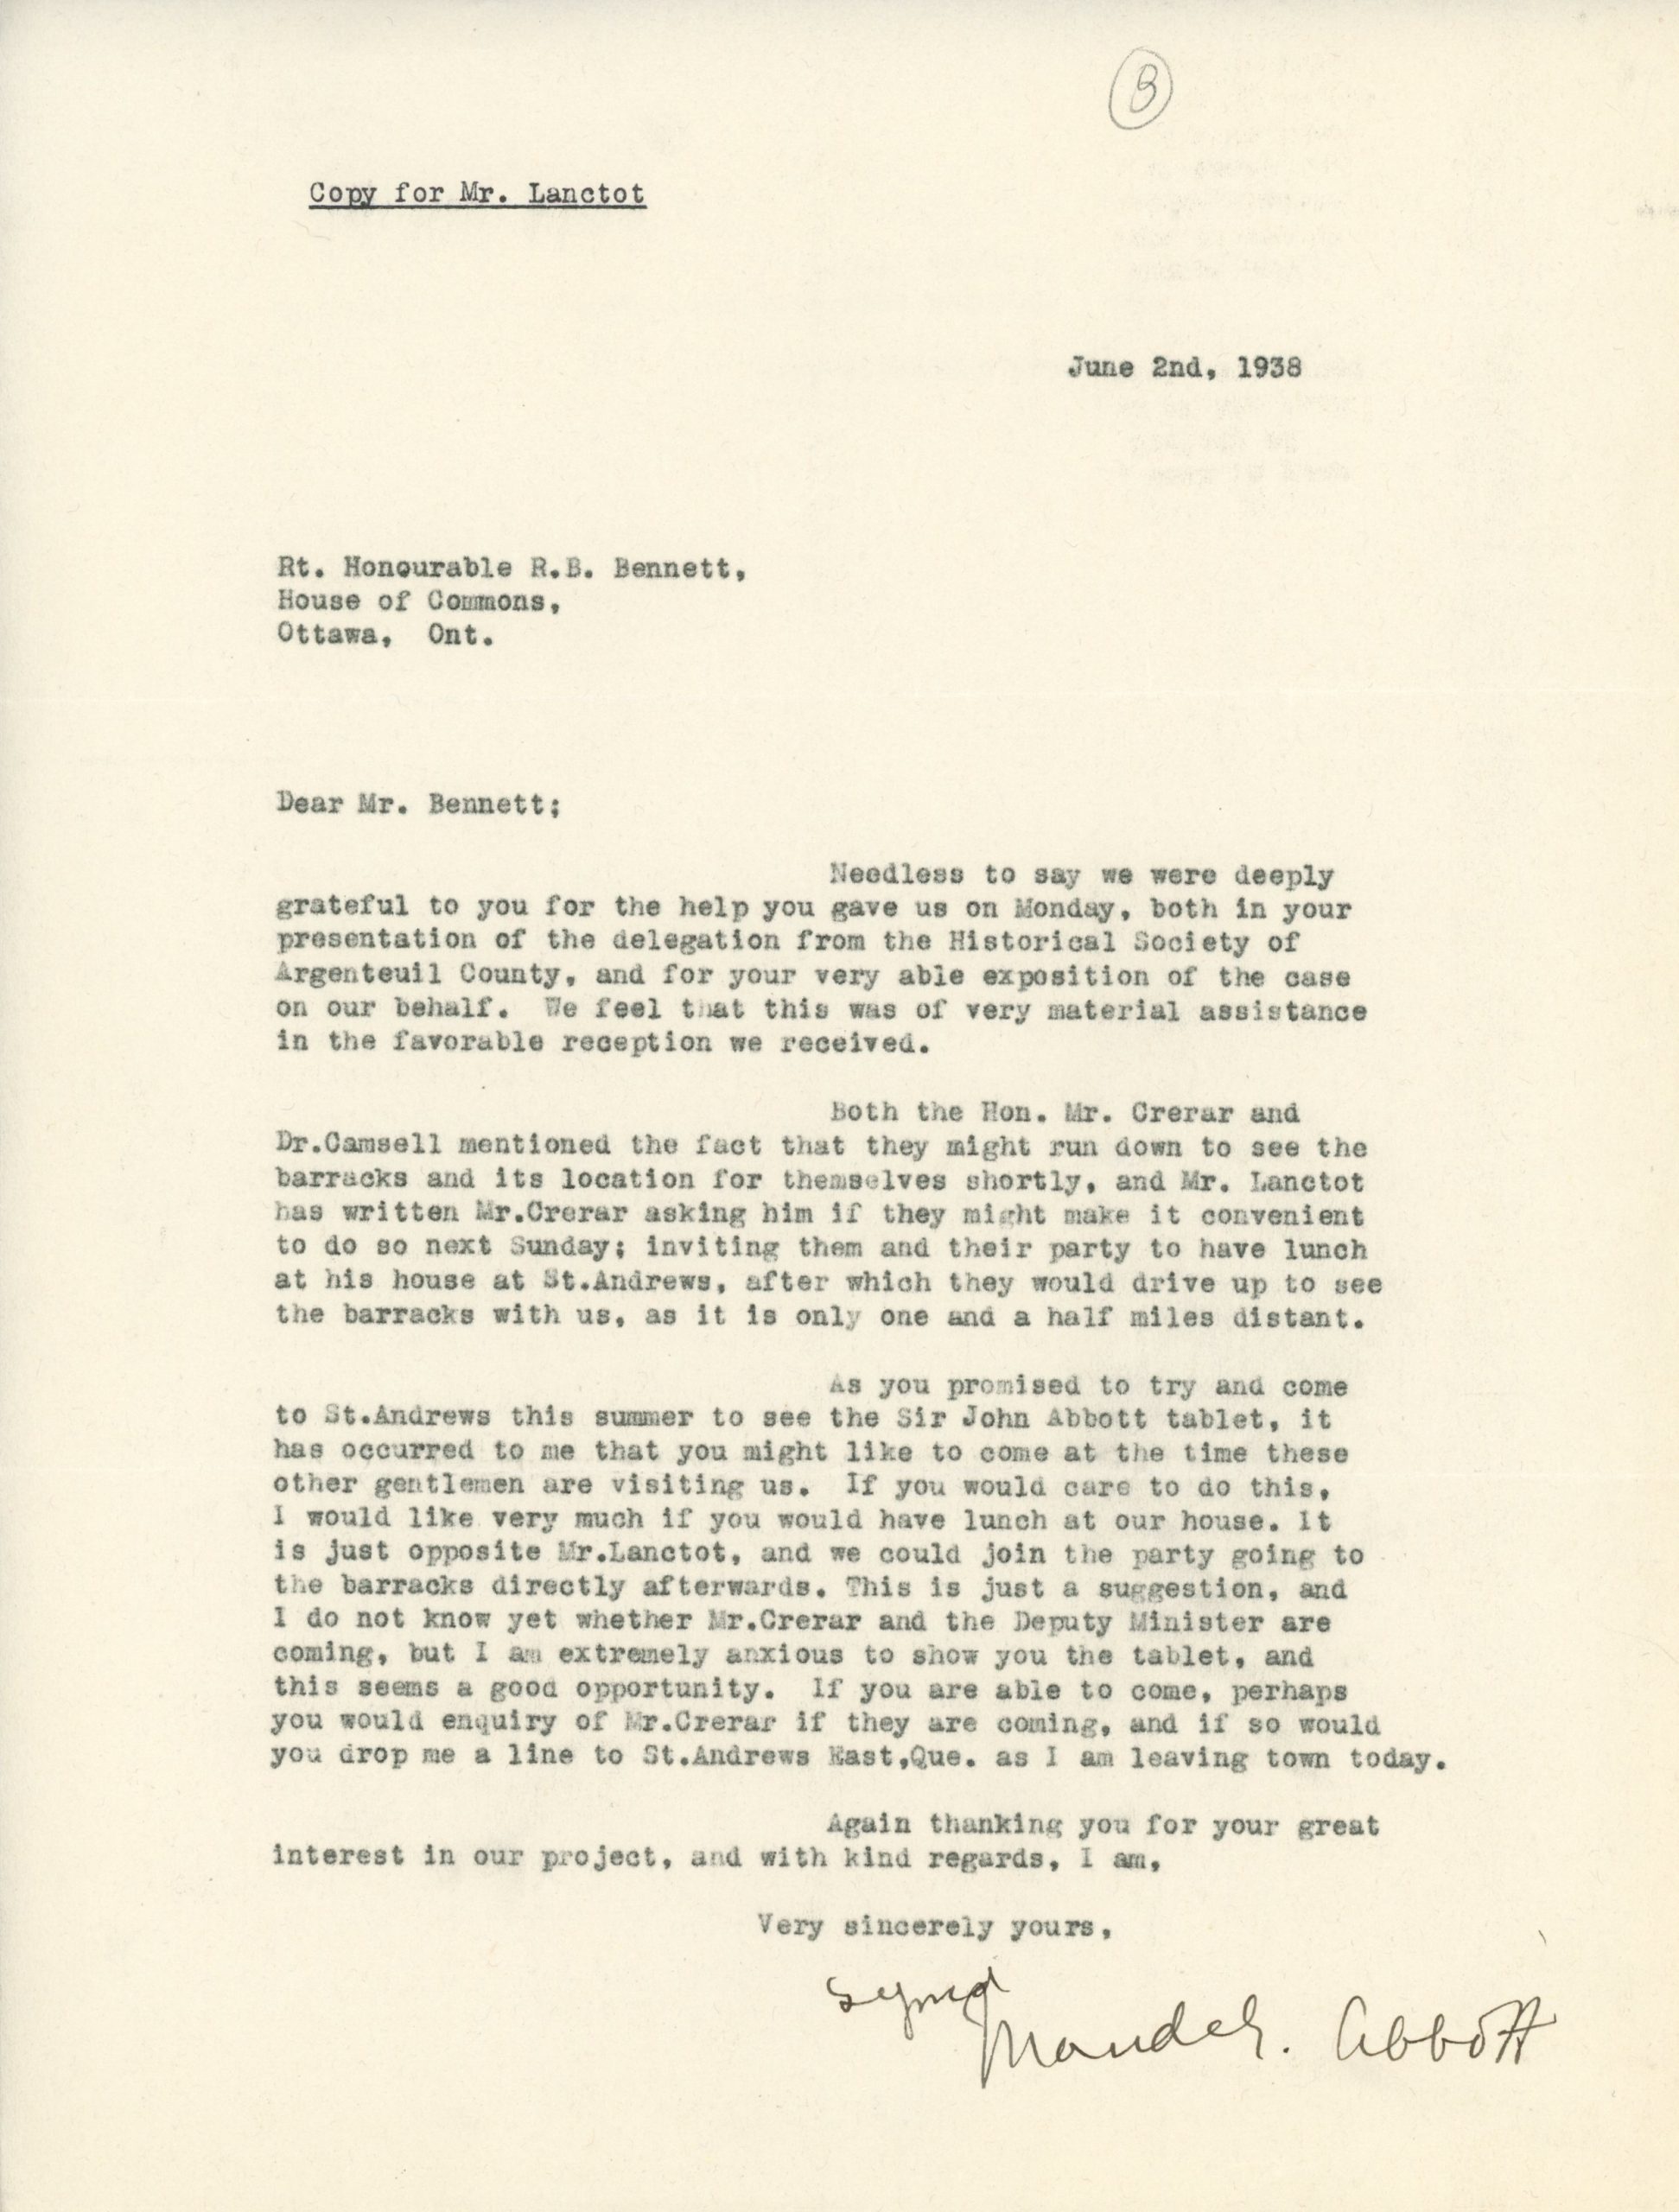 Copie d’une lettre dactylographiée de Maude Abbott à R.B. Bennett datée du 2 juin 1938. Elle le remercie pour son aide auprès de la Société historique du comté d’Argenteuil et la caserne et l’invite à venir la visiter à St-Andrews.